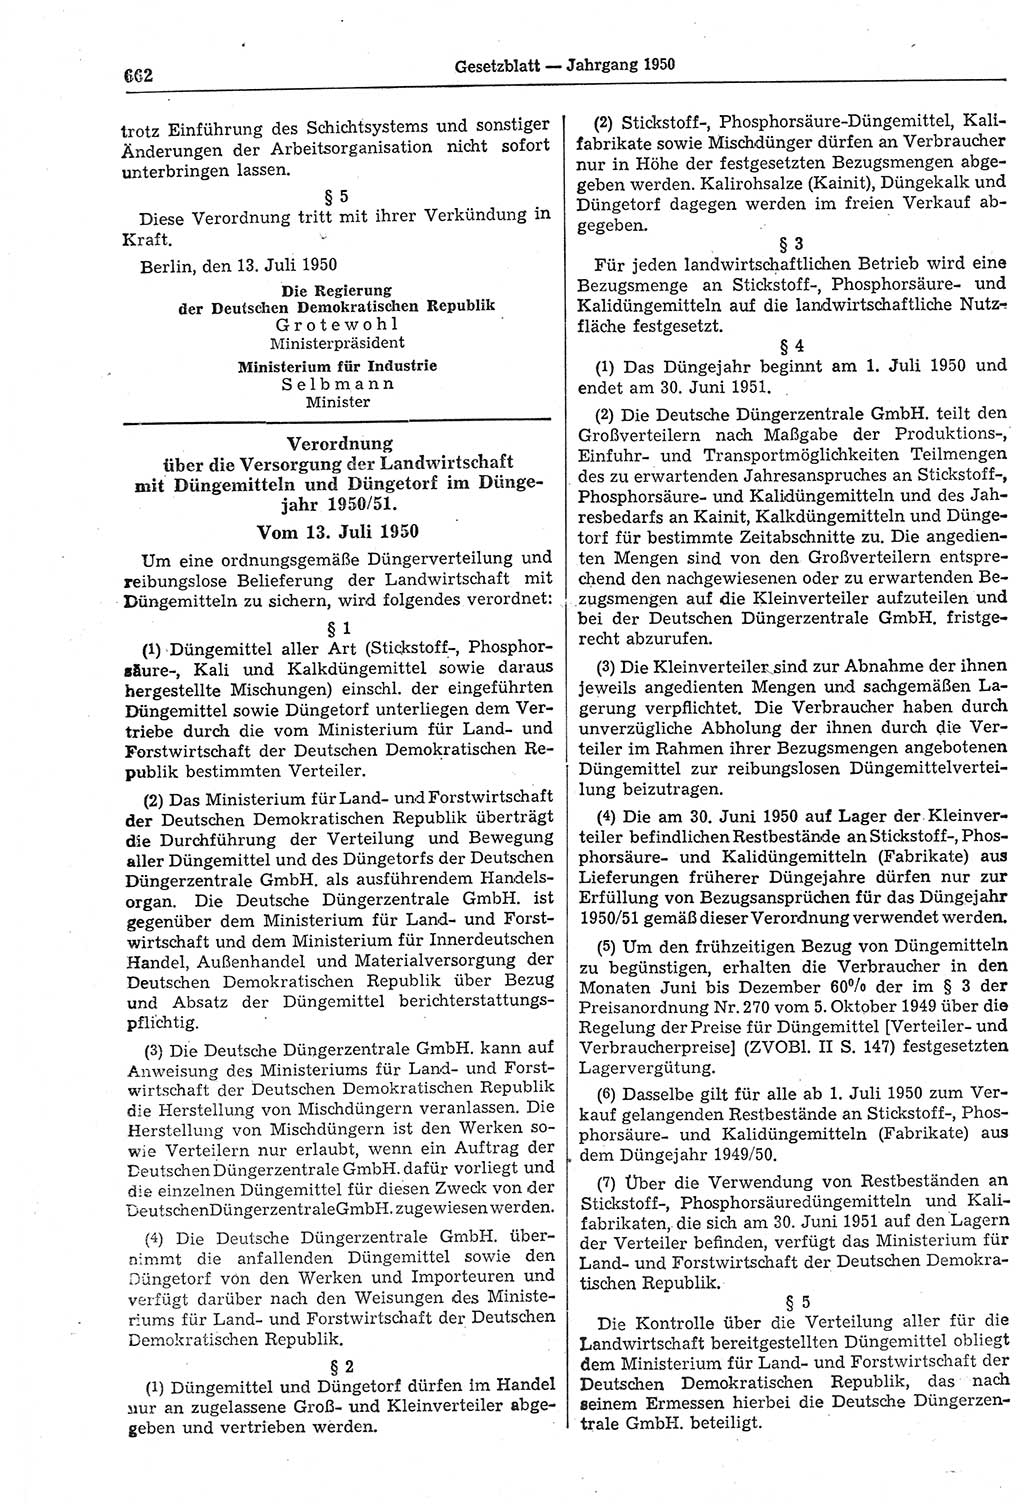 Gesetzblatt (GBl.) der Deutschen Demokratischen Republik (DDR) 1950, Seite 662 (GBl. DDR 1950, S. 662)